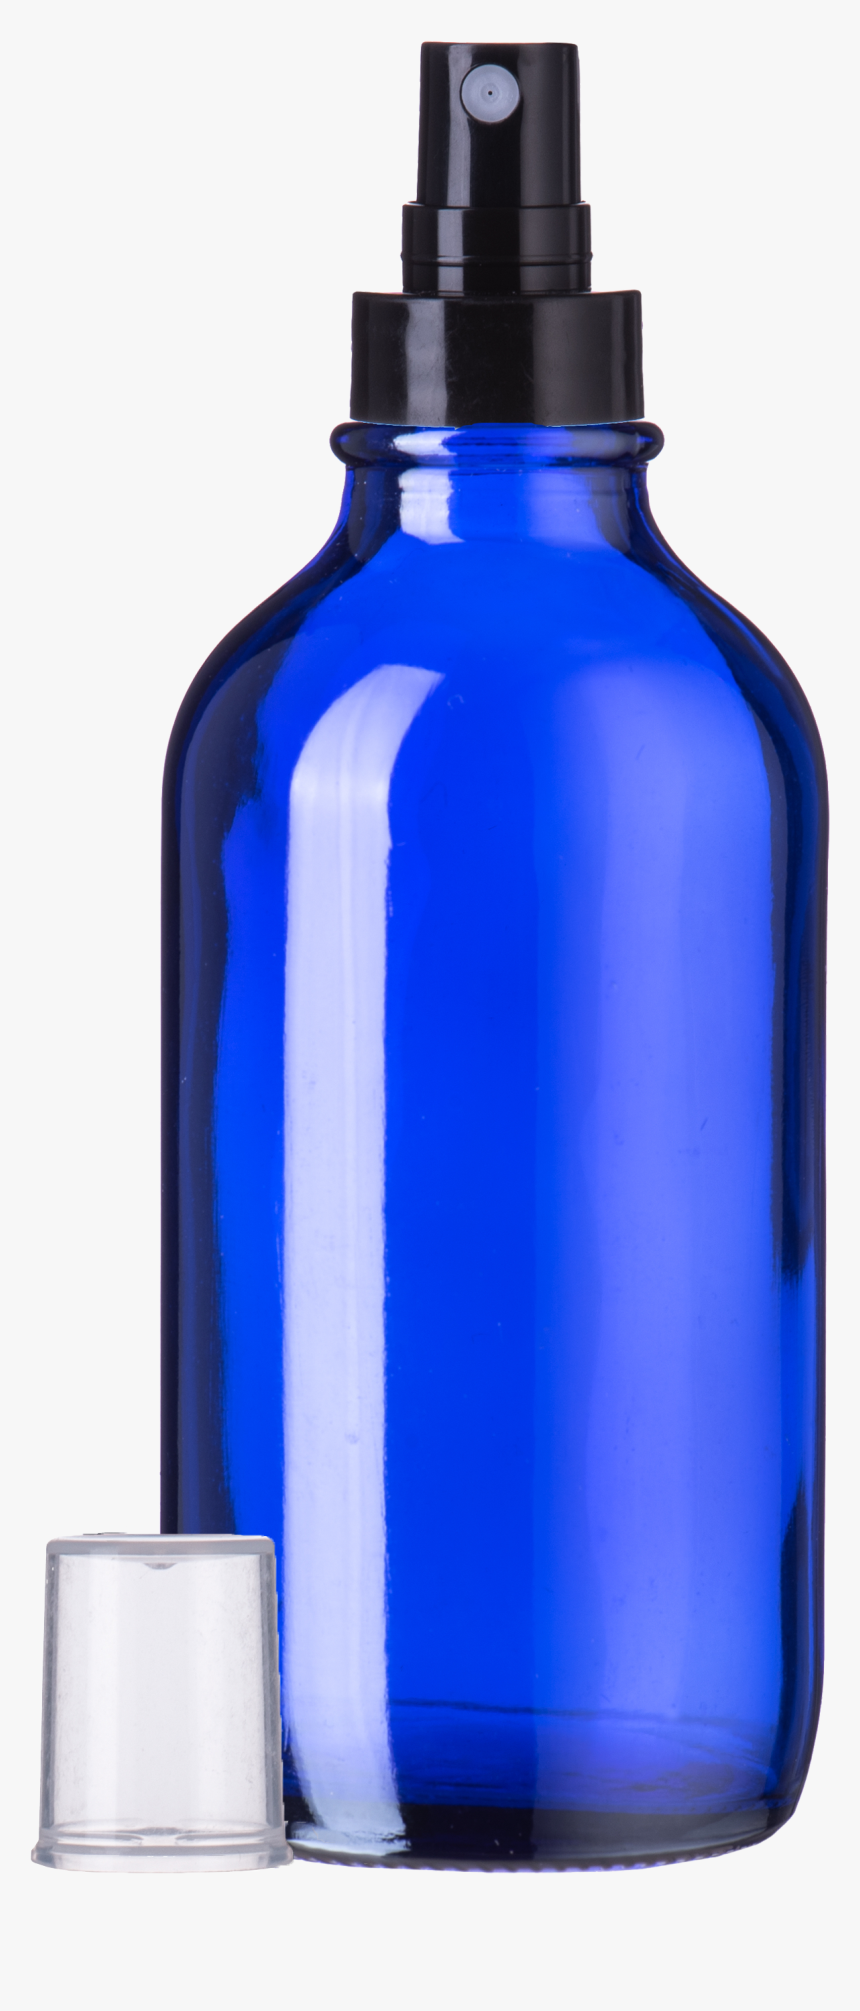 4oz Amber Spray Bottle Png, Transparent Png, Free Download